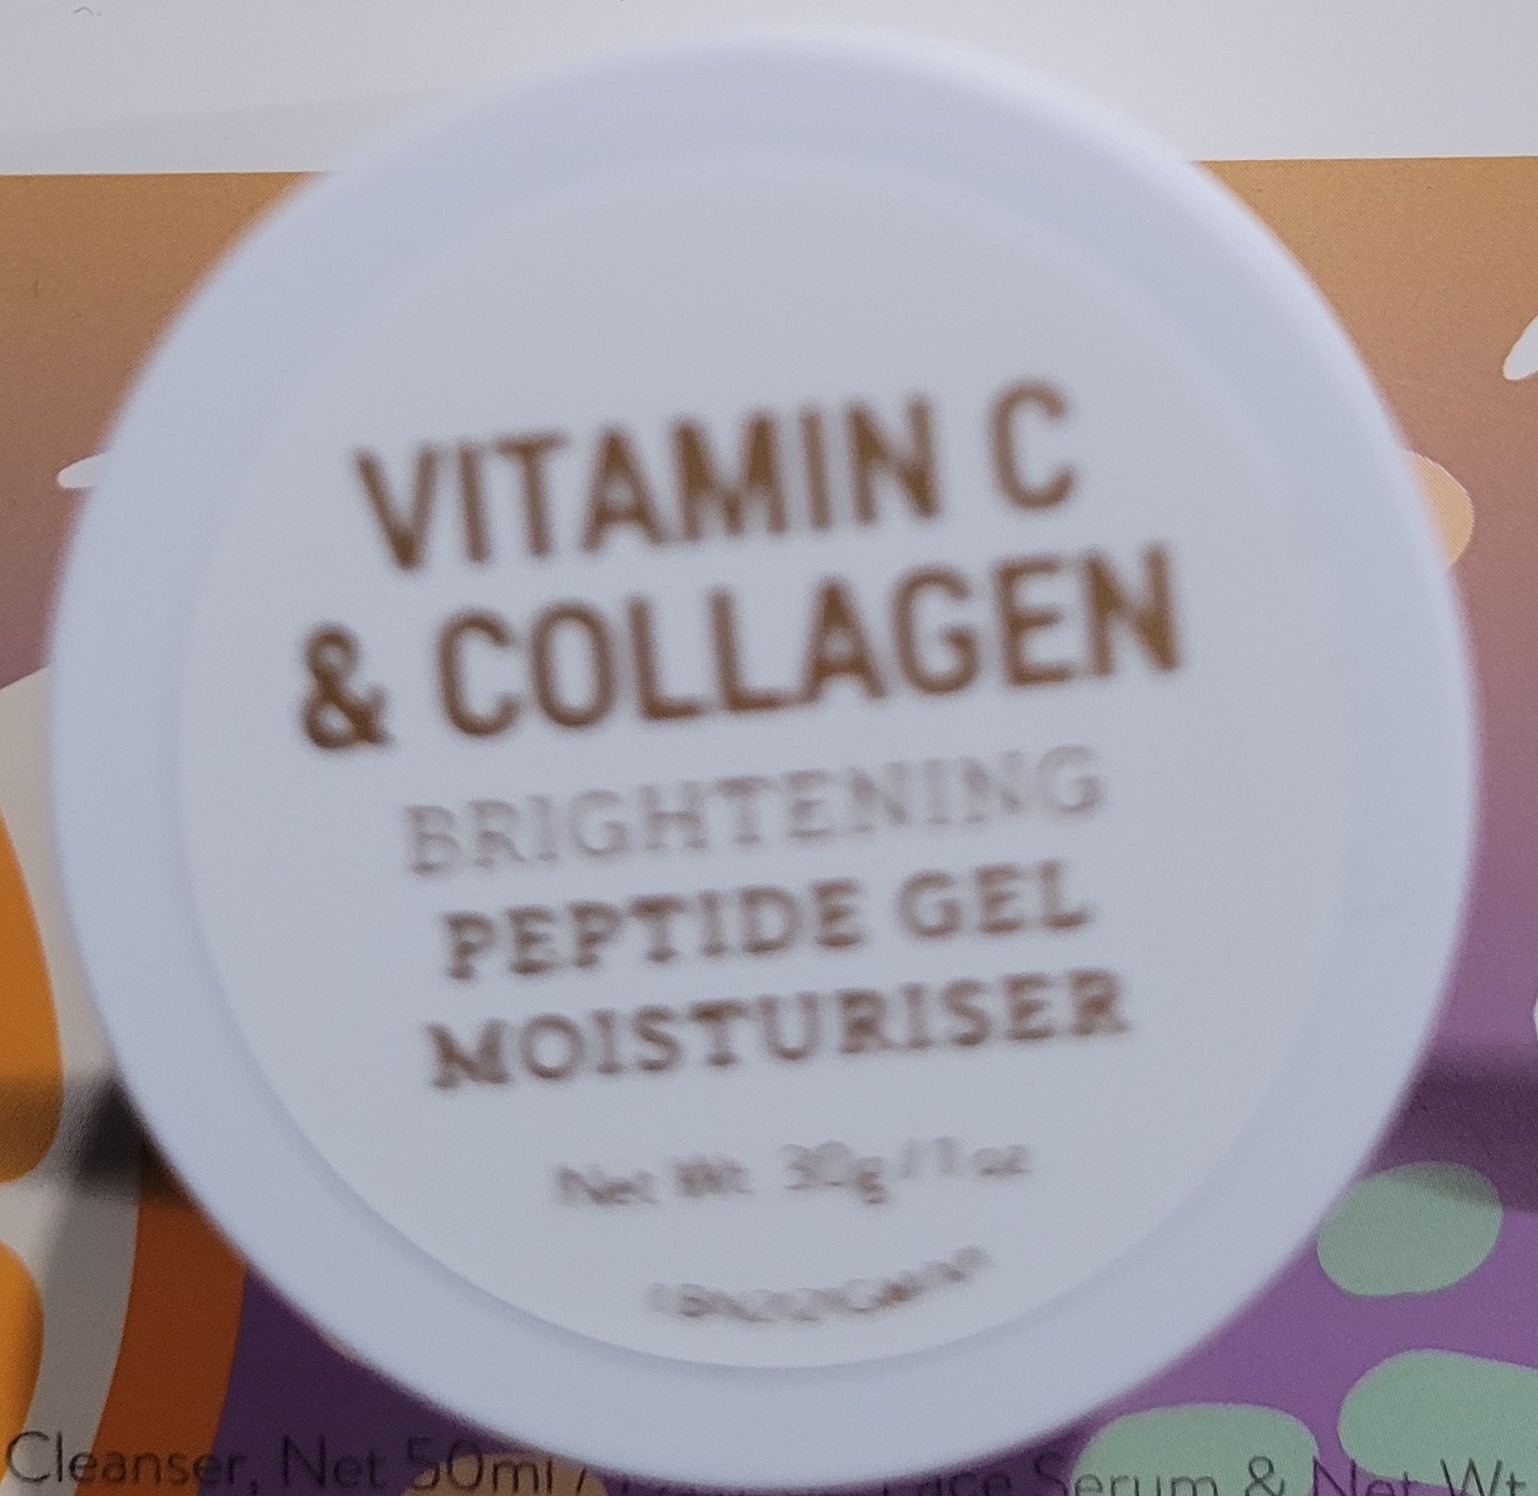 By Nature Vitamin C And Collagen Brightening Peptide Gel Moisturiser